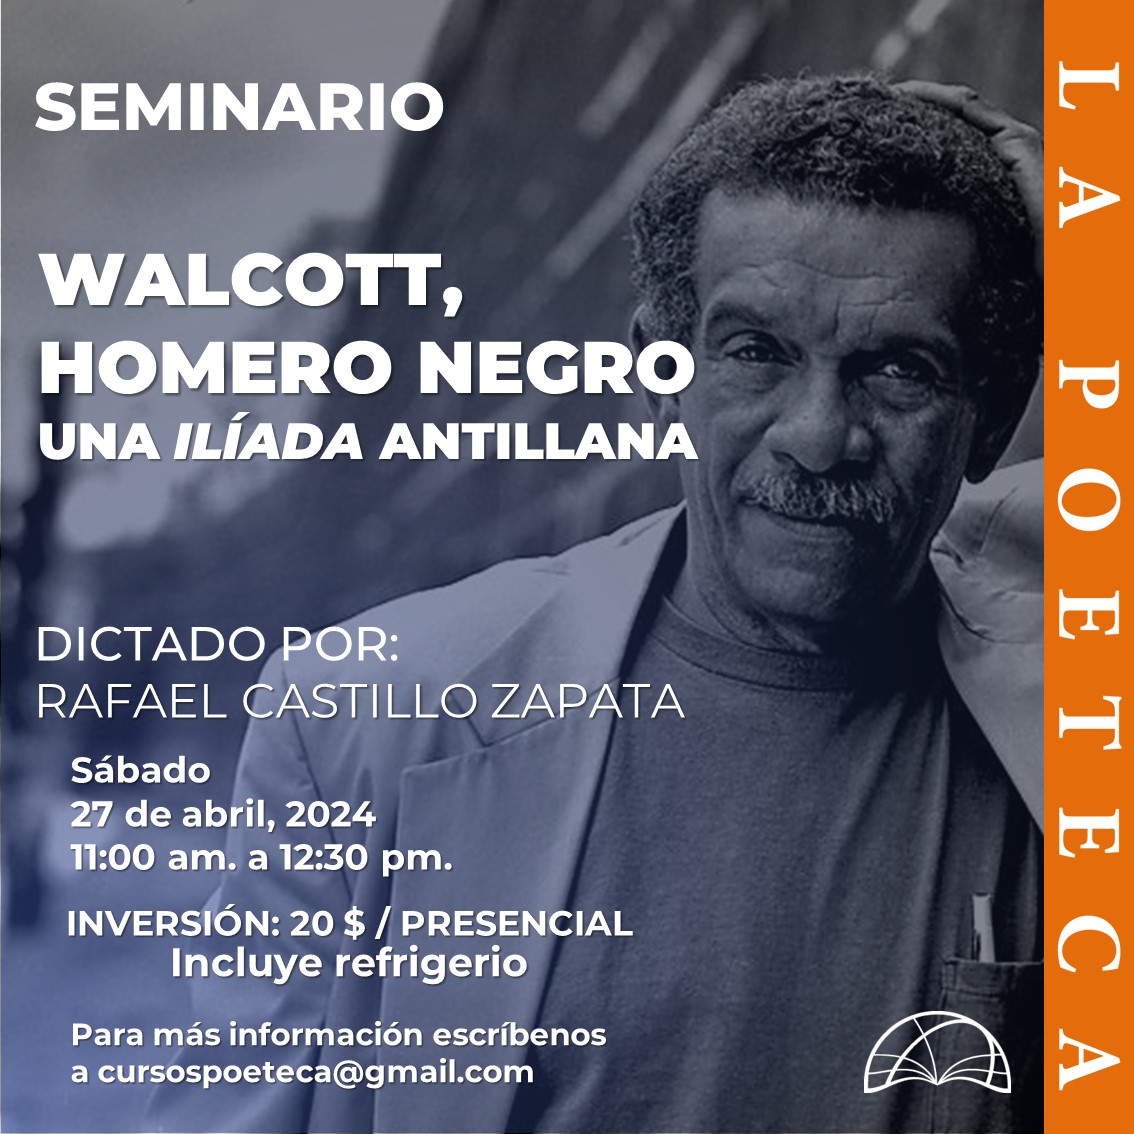 Este sábado #27Abril el seminario con el profesor Rafael Castillo Zapata estará dedicado al poeta Derek Walcott y su poema Omeros.
Si te lo perdiste el mes pasado, escríbenos al correo cursospoeteca@gmail.com para resrvar tu cupo. 

¡No te lo pierdas!

#DíaInternacionalDelLibro